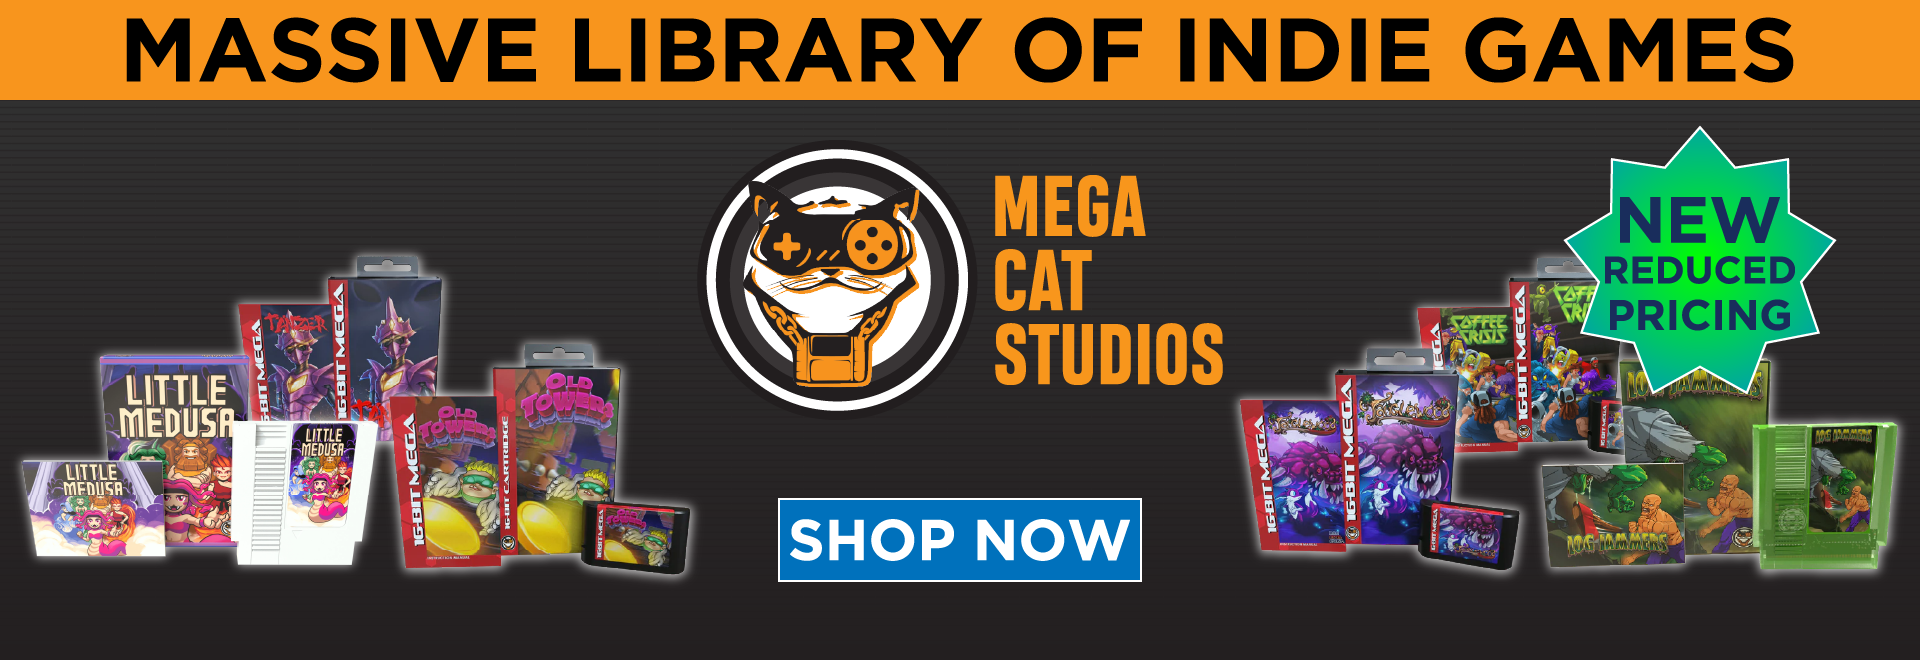 Mega Cat Studios - New Pricing